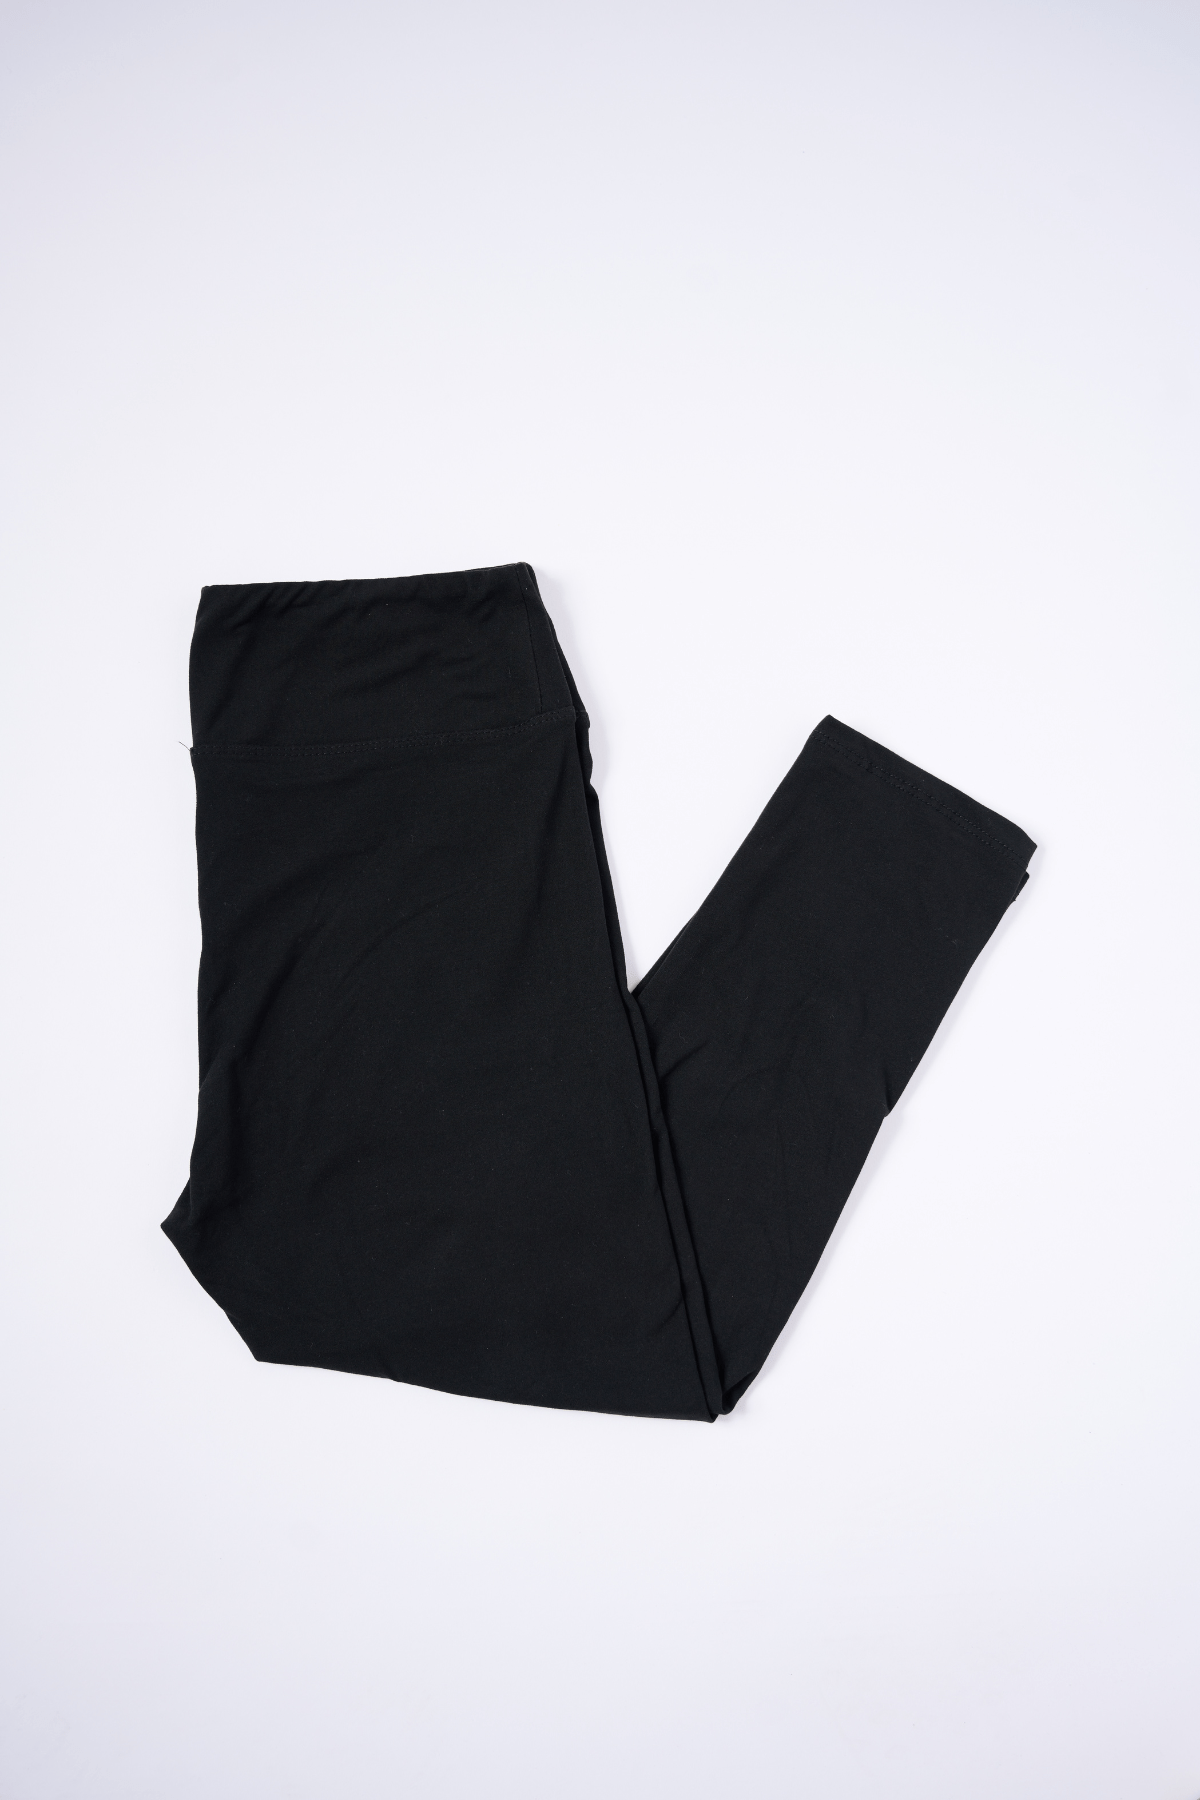 oolala Capri Solid Black Capri with Yoga Band Solid Black Capri with Yoga Band - Soft, comfortable leggings. Beautiful designs and patterns. 